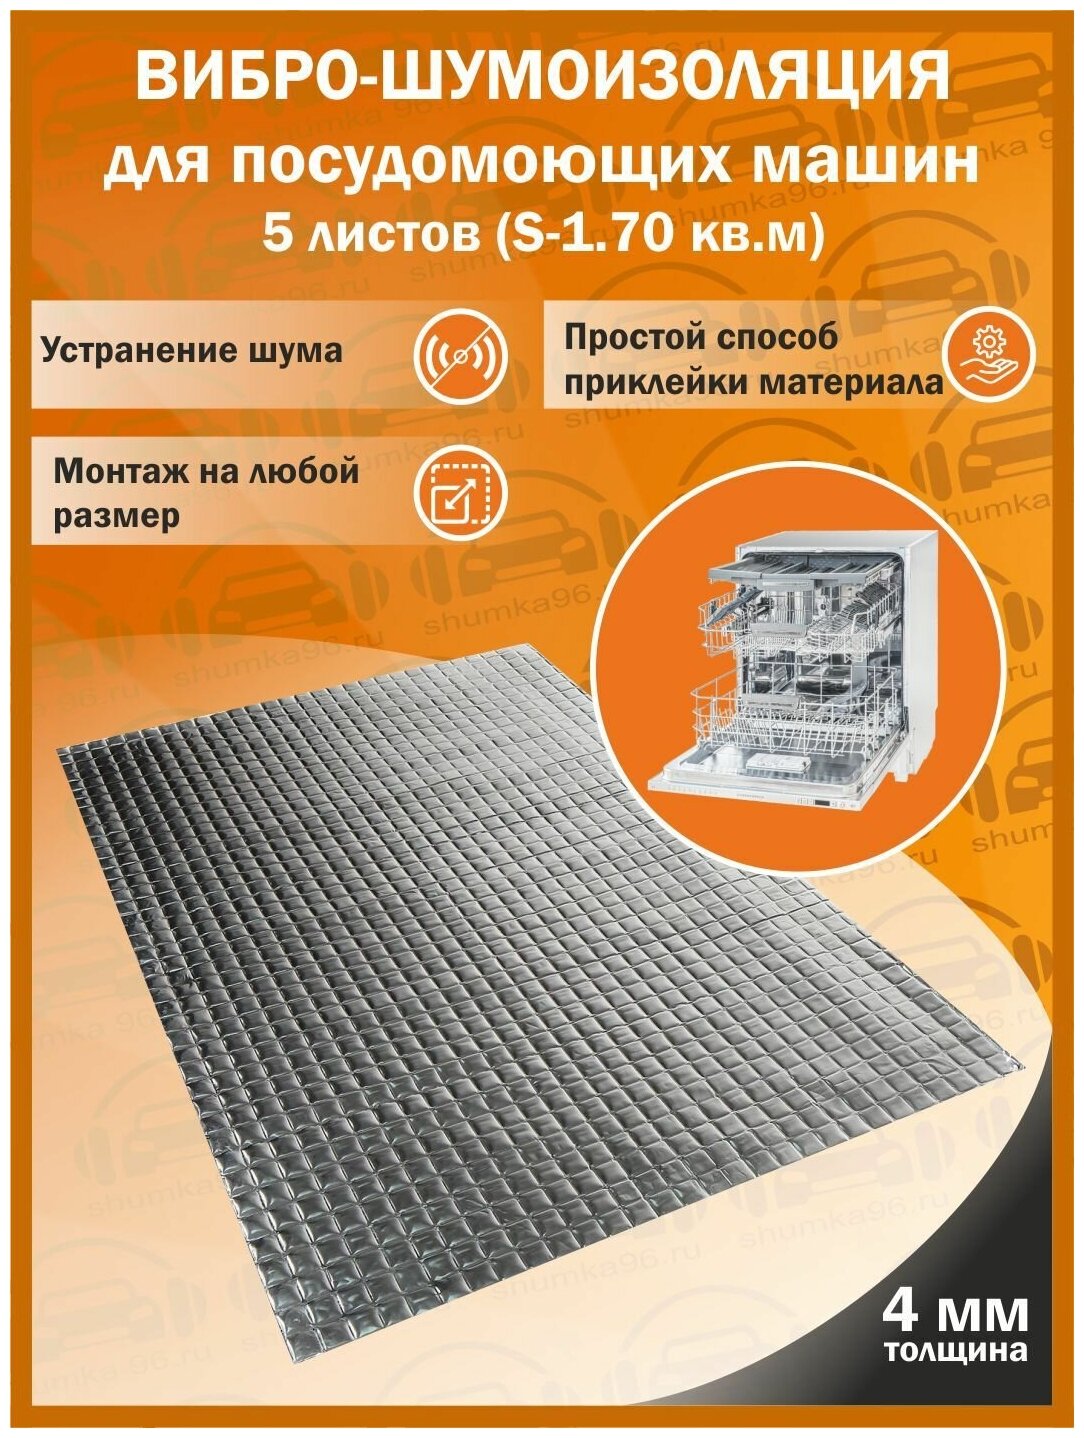 Комплект вибро-шумоизоляции для посудомоющих машин shumka96 (5 листов толщиной 4 мм S - 1,75 кв. м.)